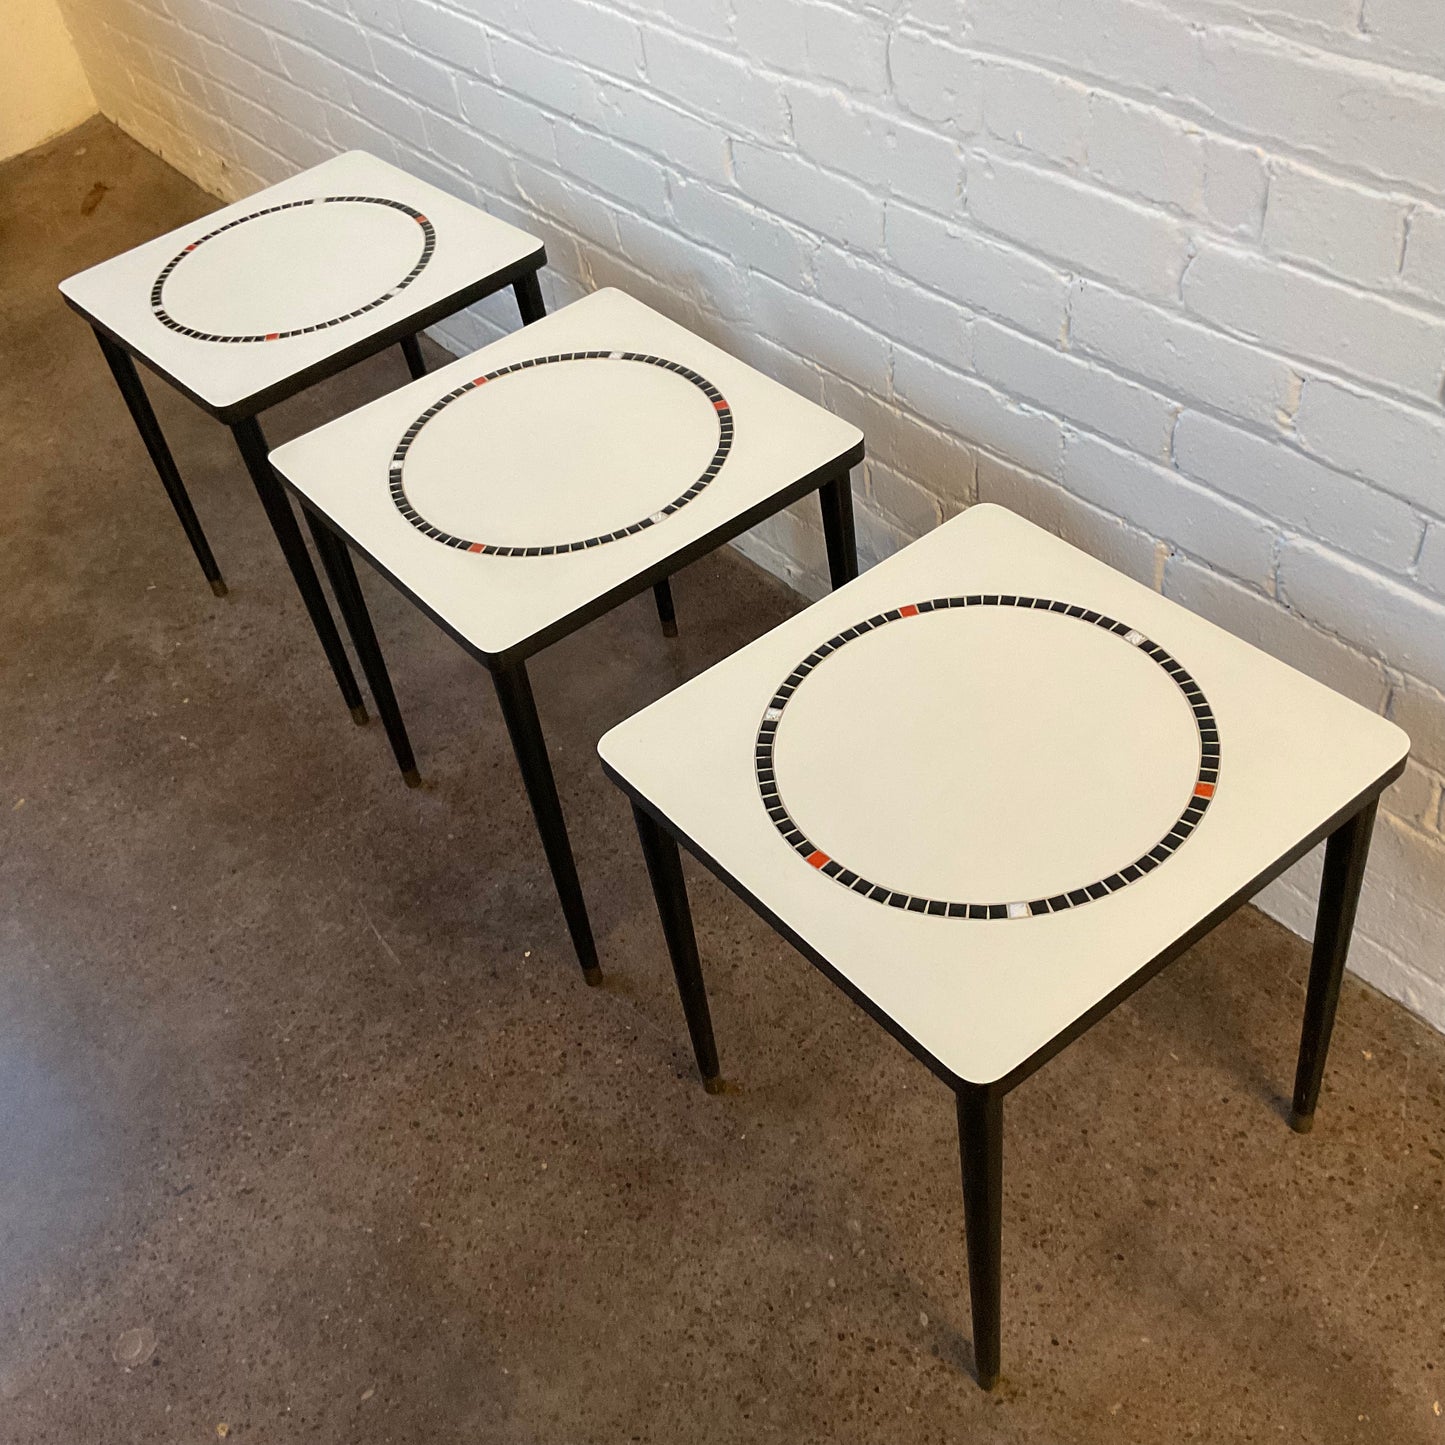 WHITE & TILE SMALL TABLE SET